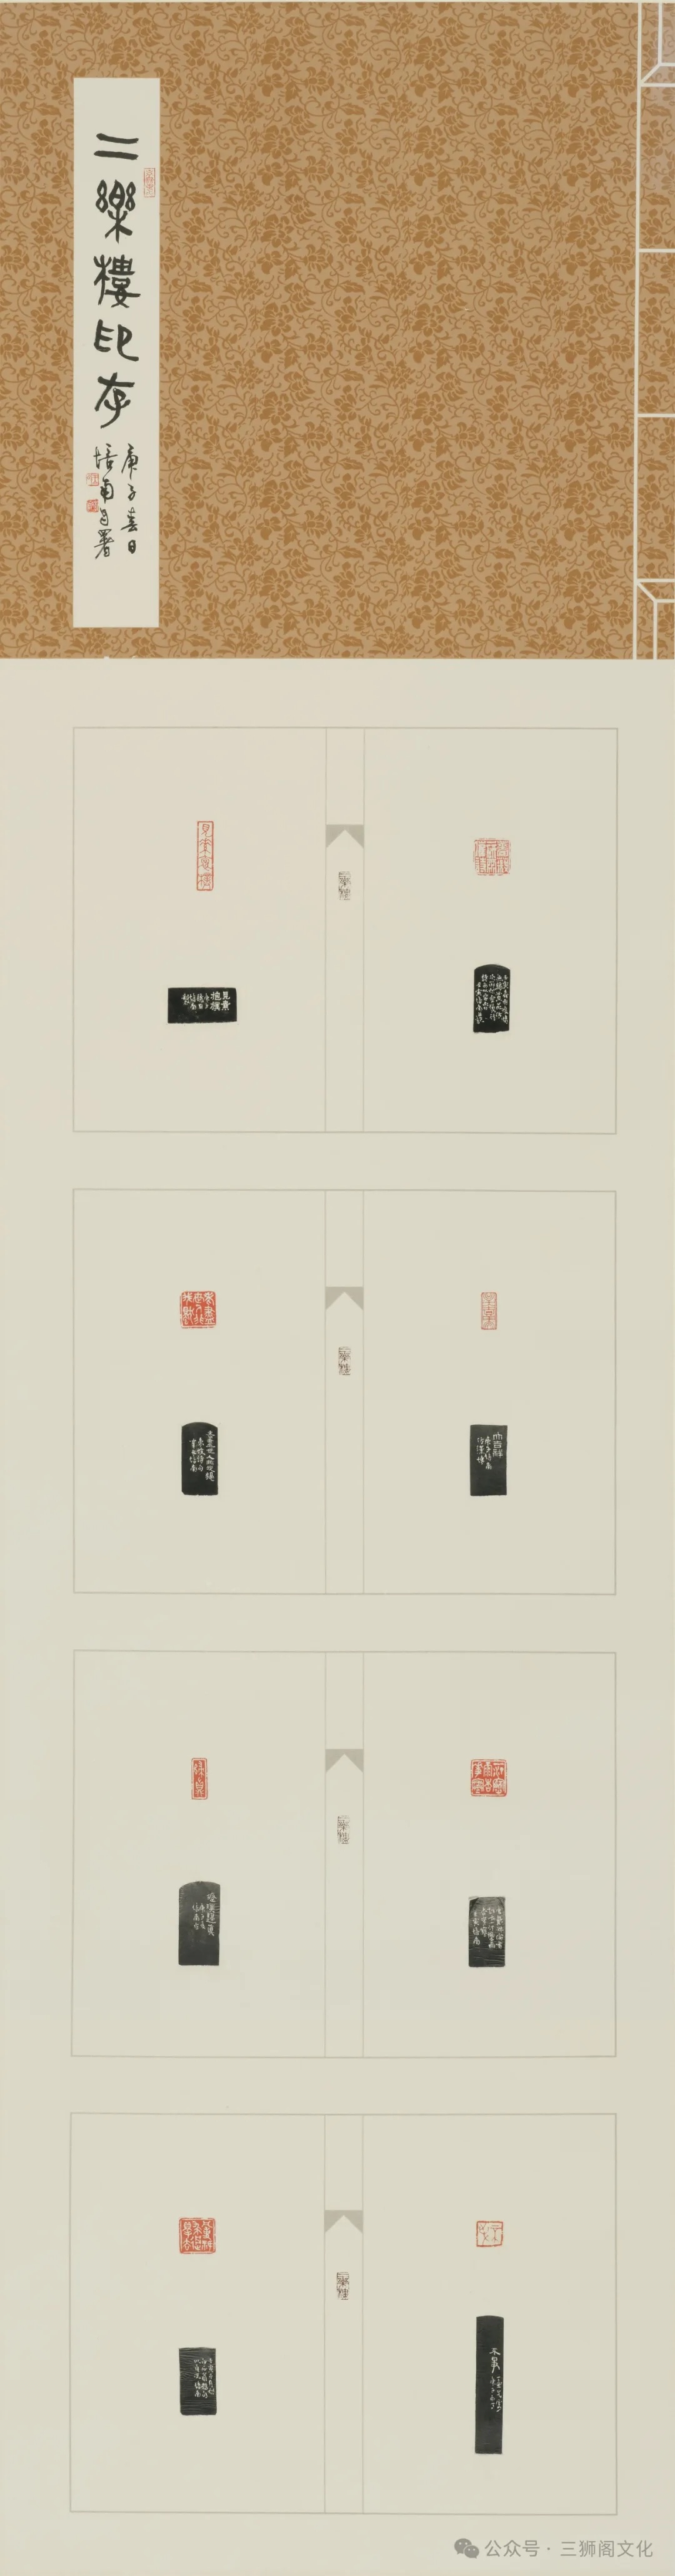 王培南，《庚子年二乐楼印存》，篆刻，180.5cm×47.0cm